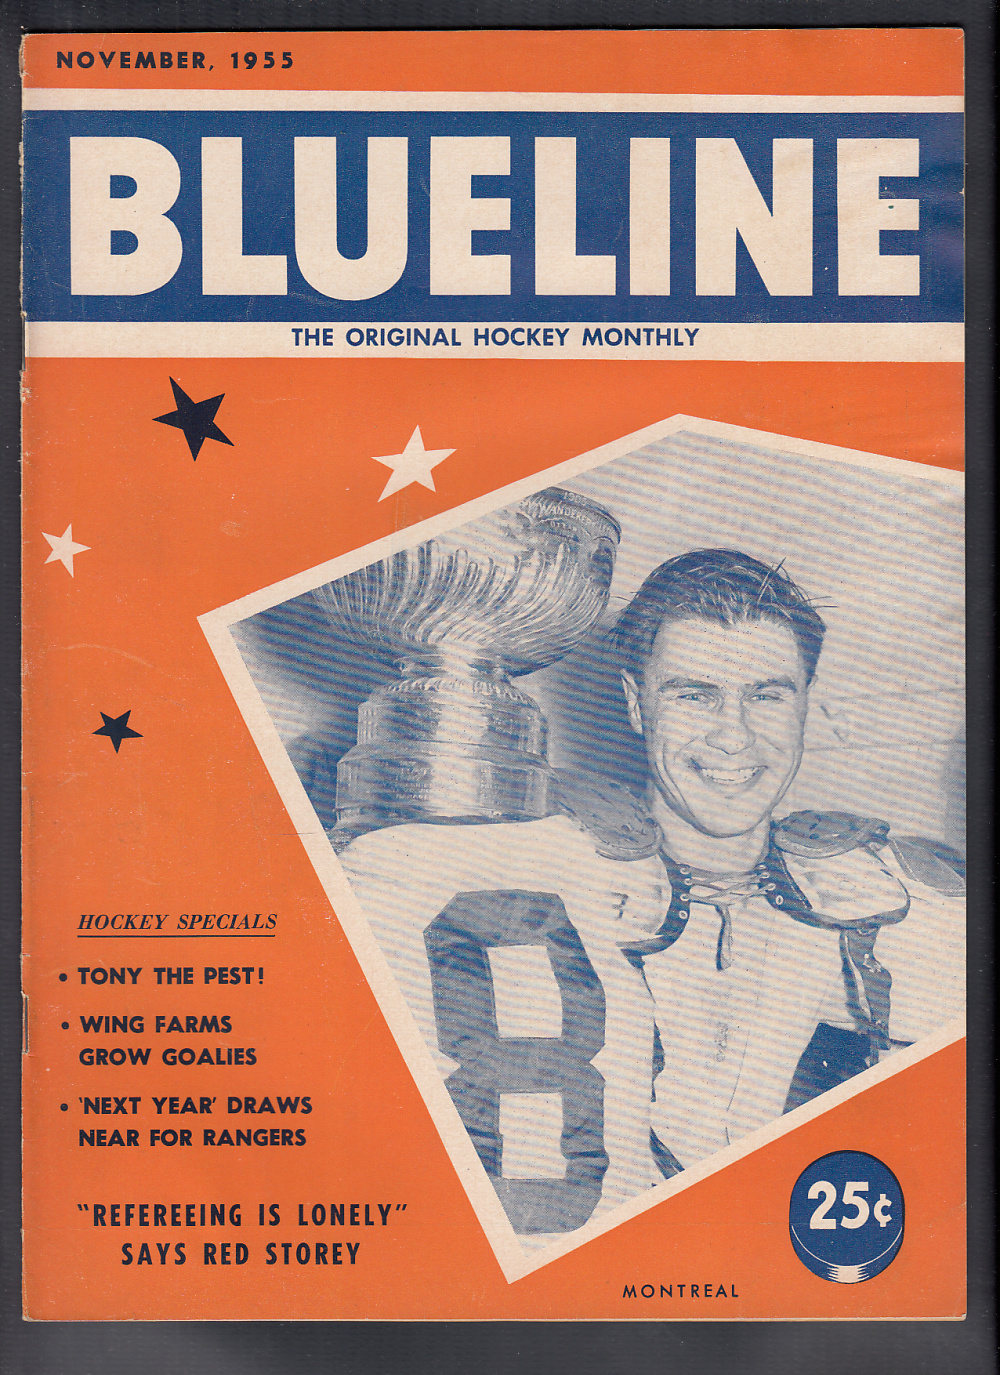 1955 BLUELINE HOCKEY MAGAZINE T. LESWICK ON COVER photo